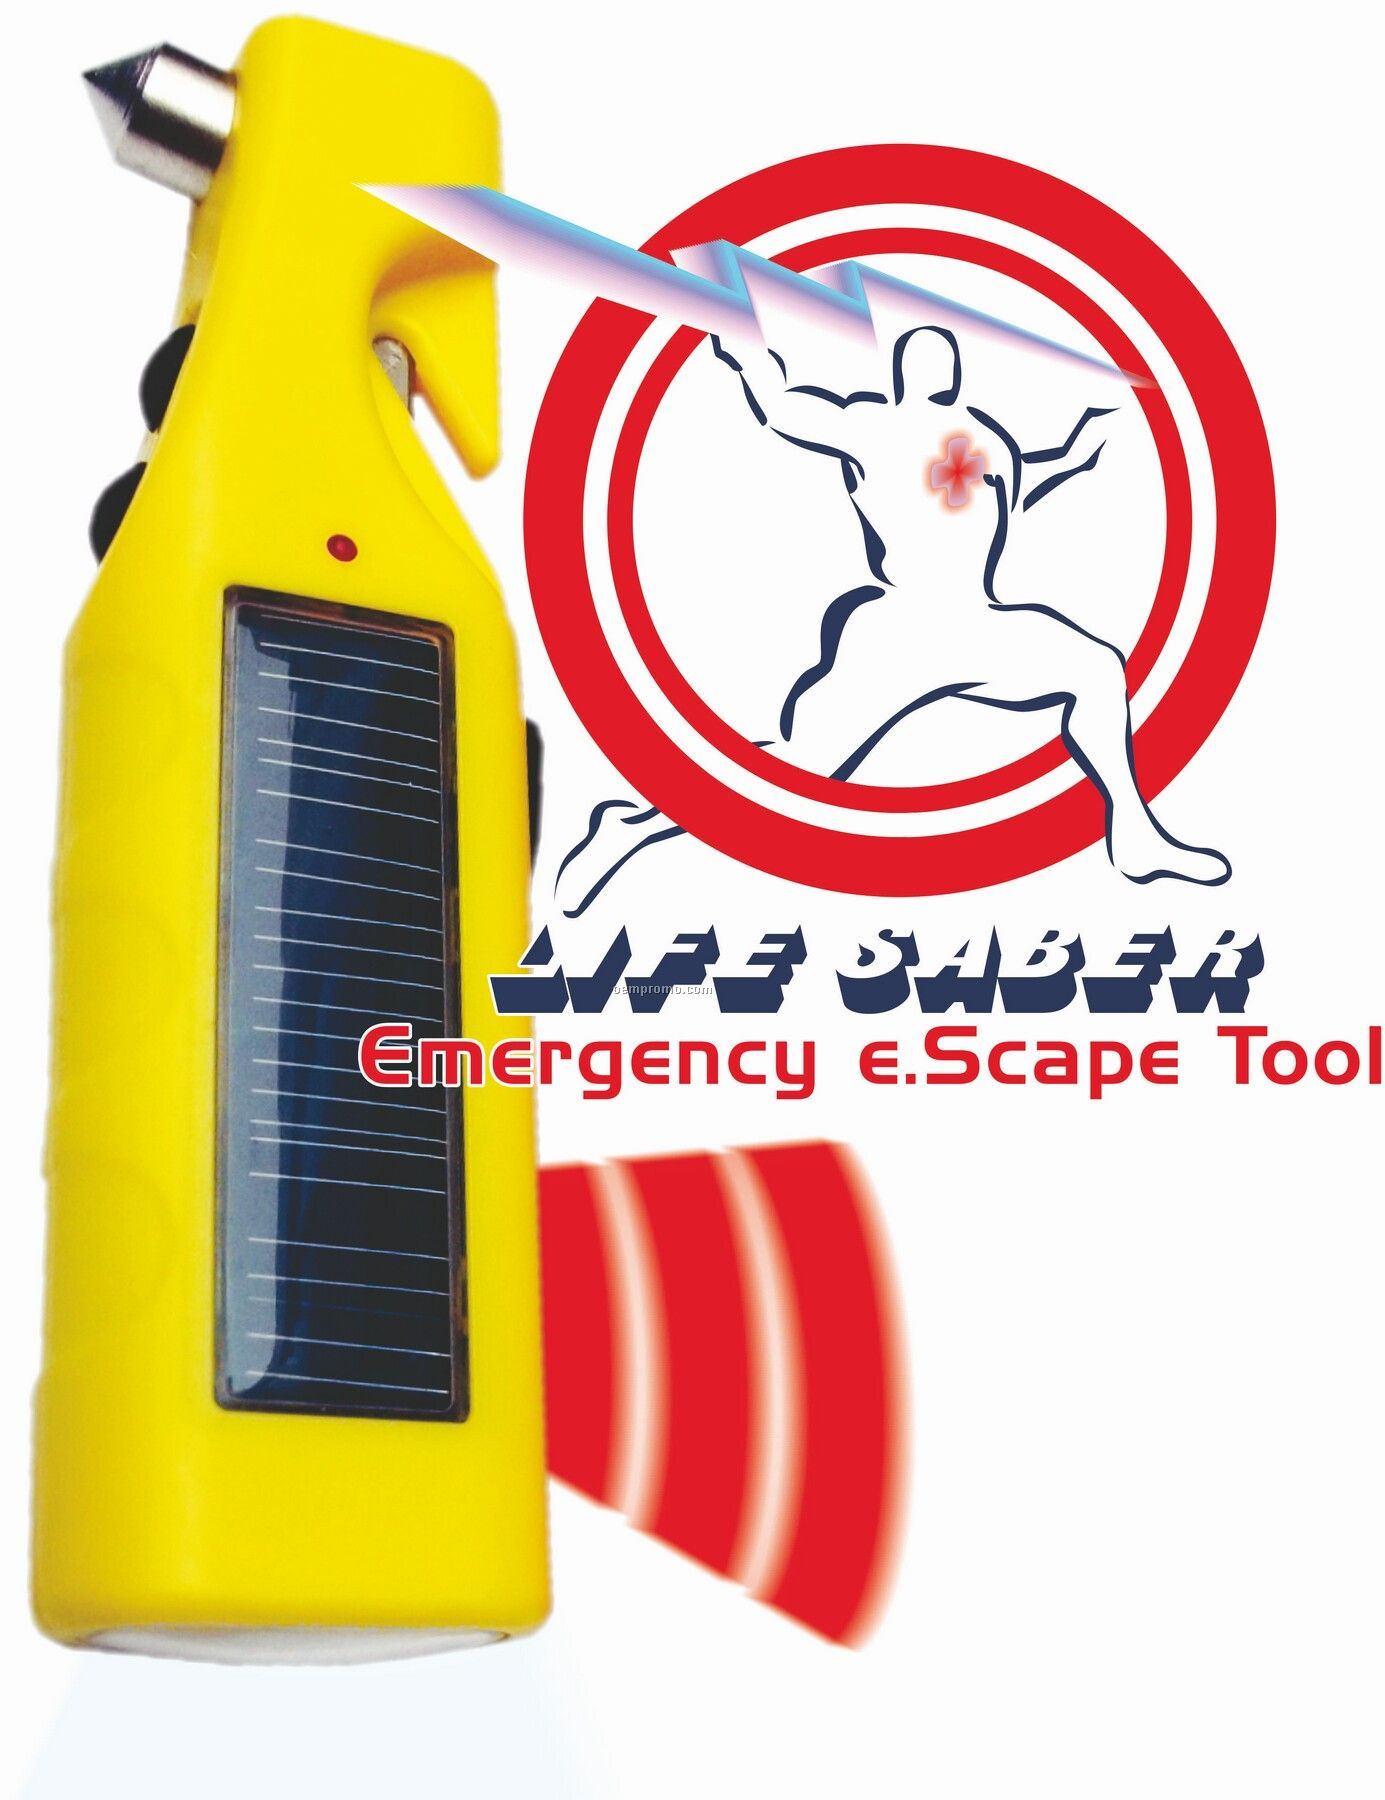 Life Saber Solar E.scape Tool